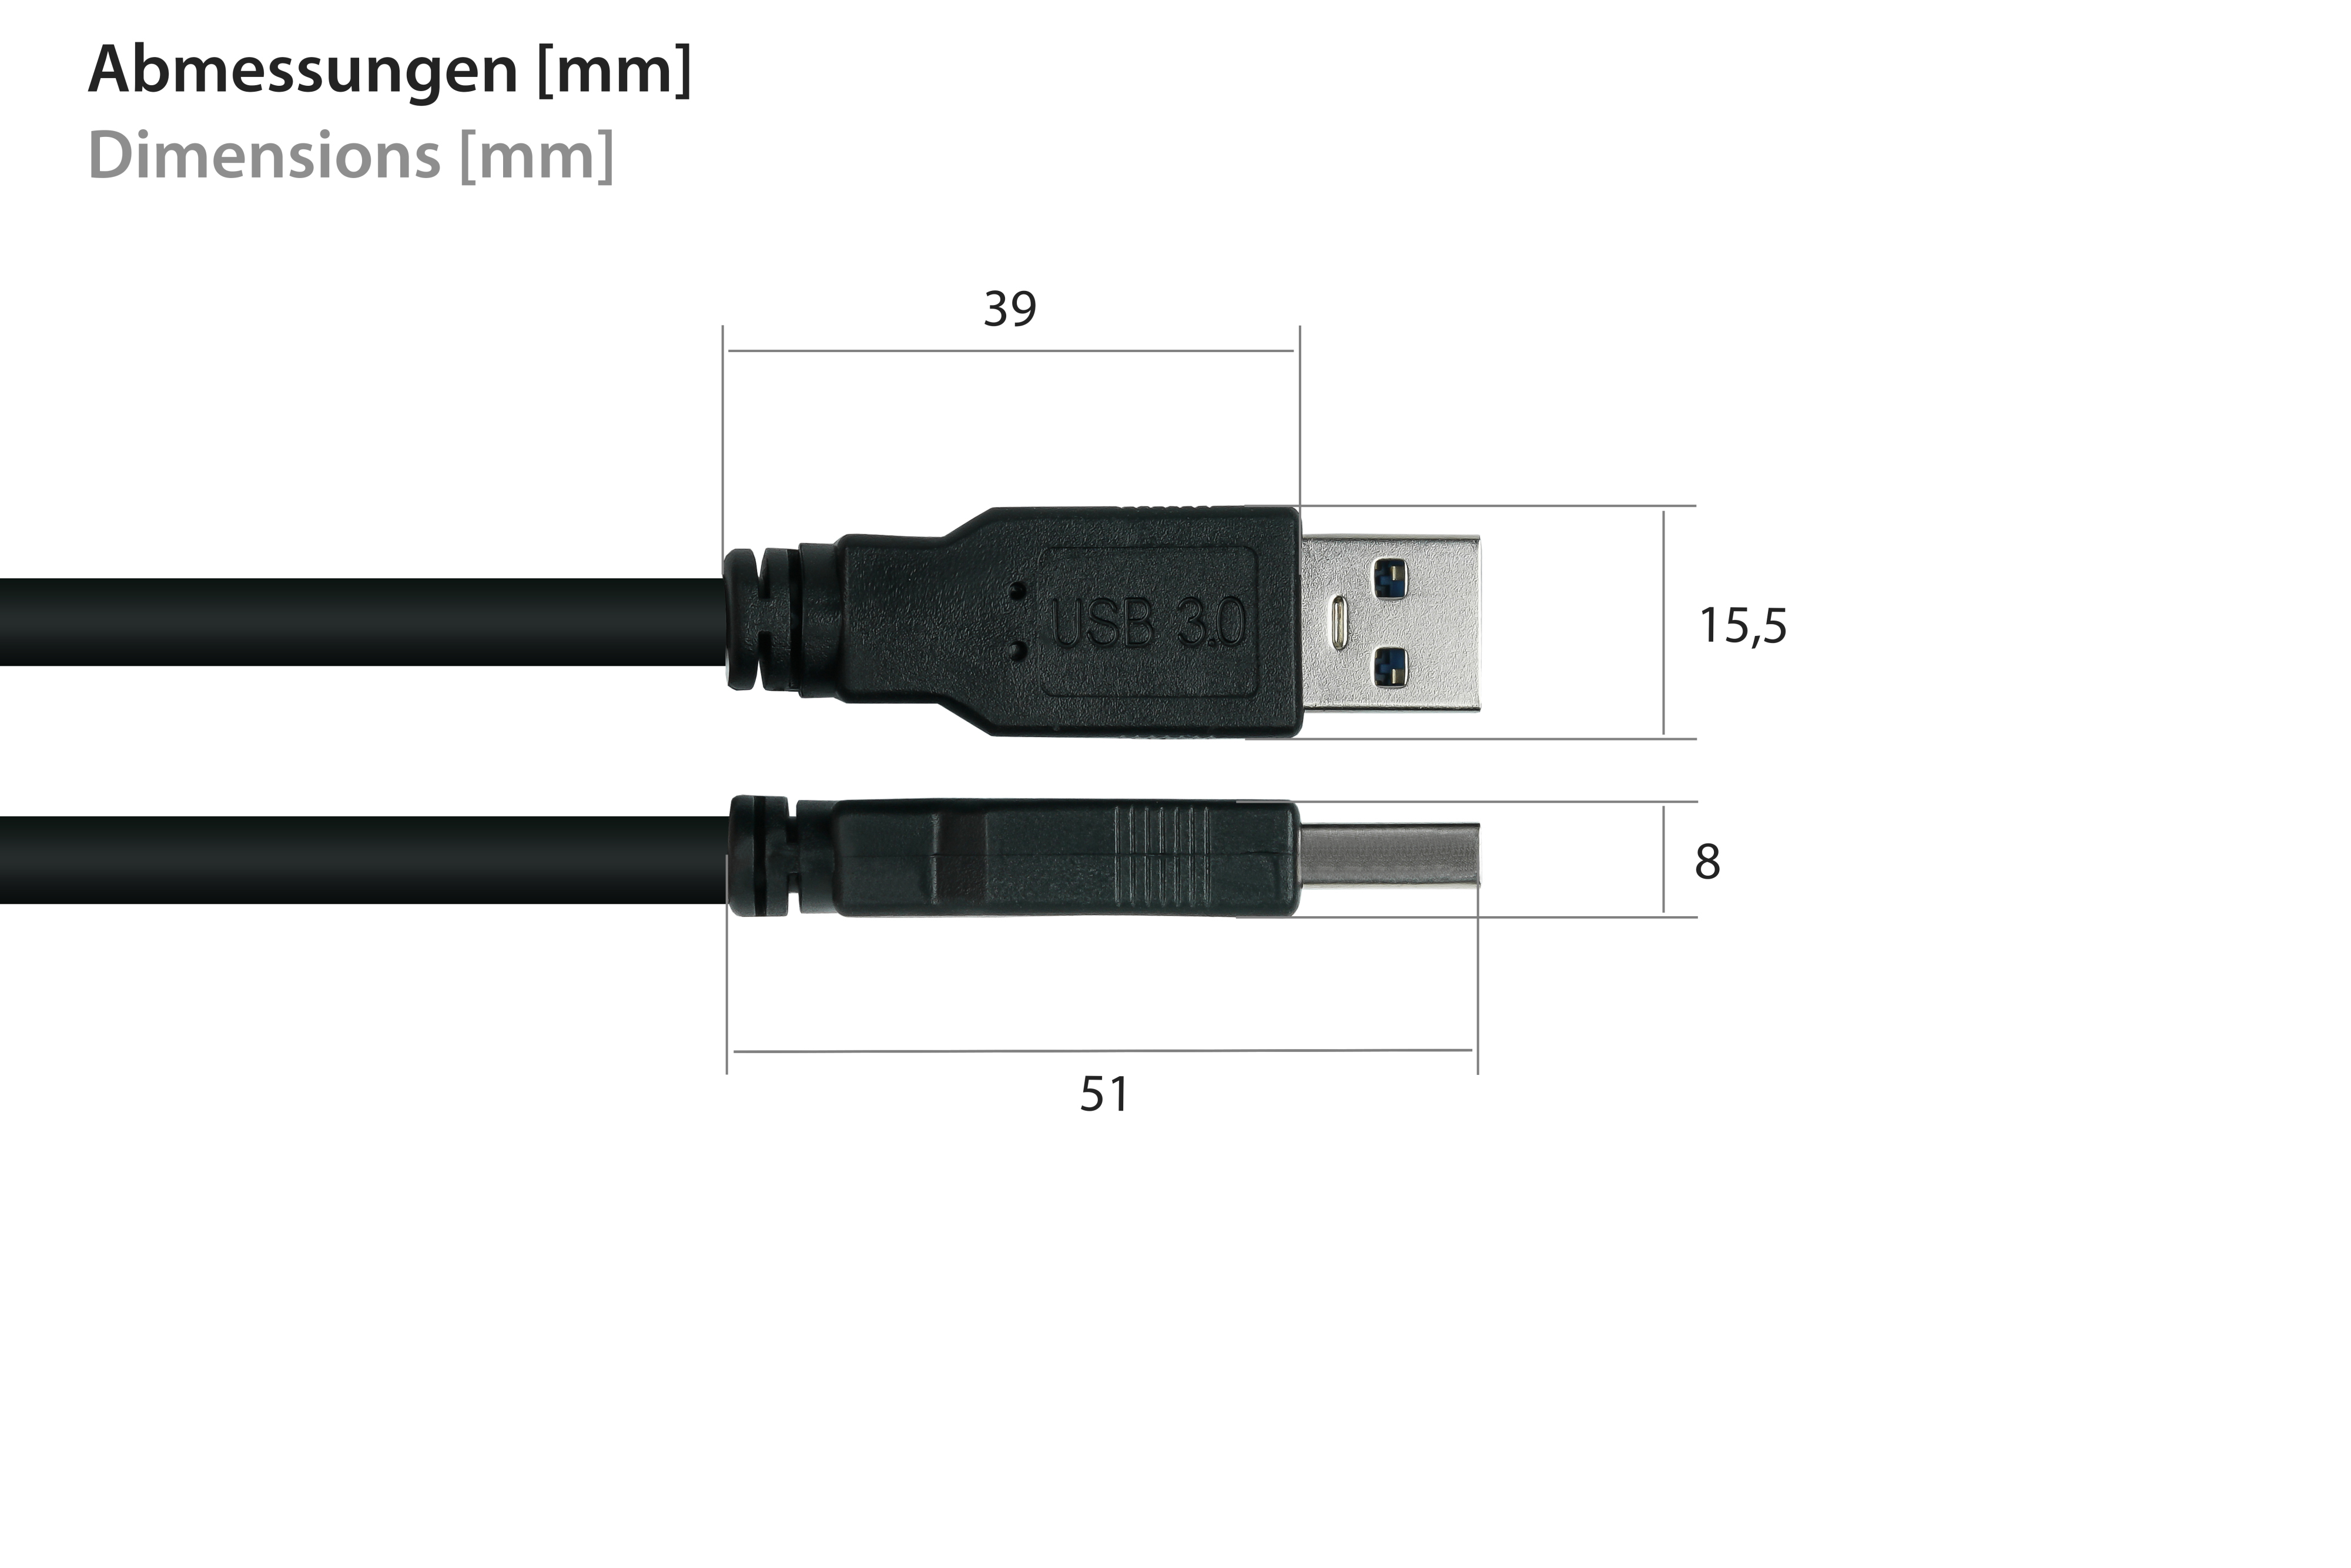 AWG28 KUPFER, Micro B,Premium, Stecker USB KABELMEISTER an 3.0 schwarz Stecker A / UL, Kabel AWG24,